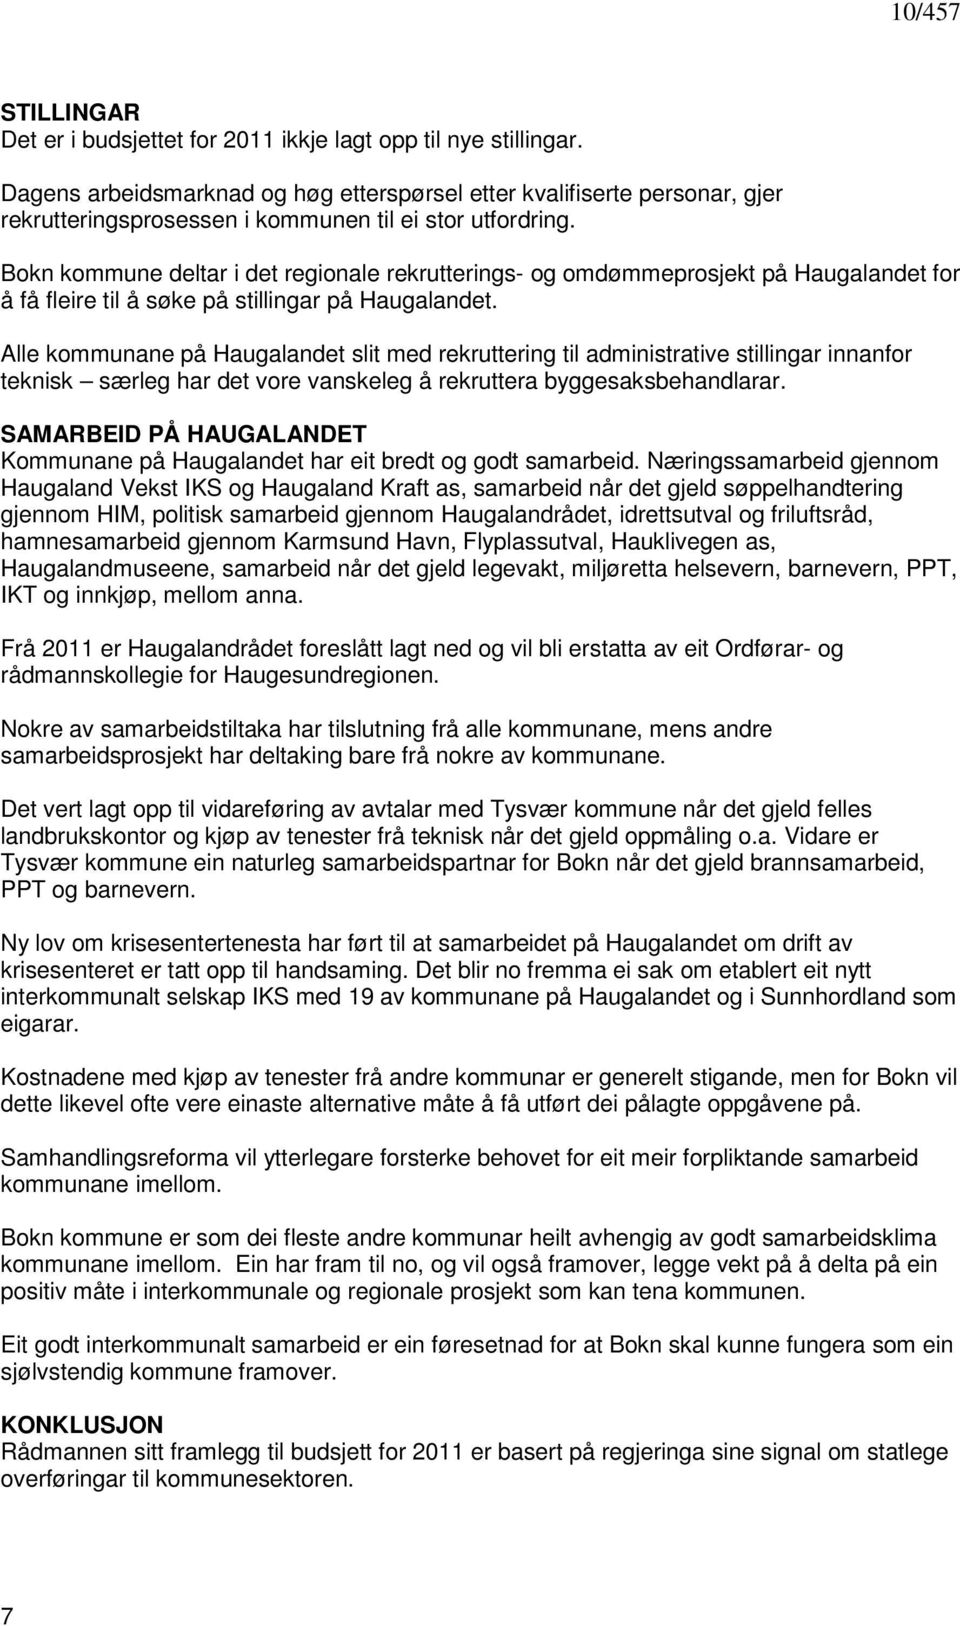 Bokn kommune deltar i det regionale rekrutterings- og omdømmeprosjekt på Haugalandet for å få fleire til å søke på stillingar på Haugalandet.